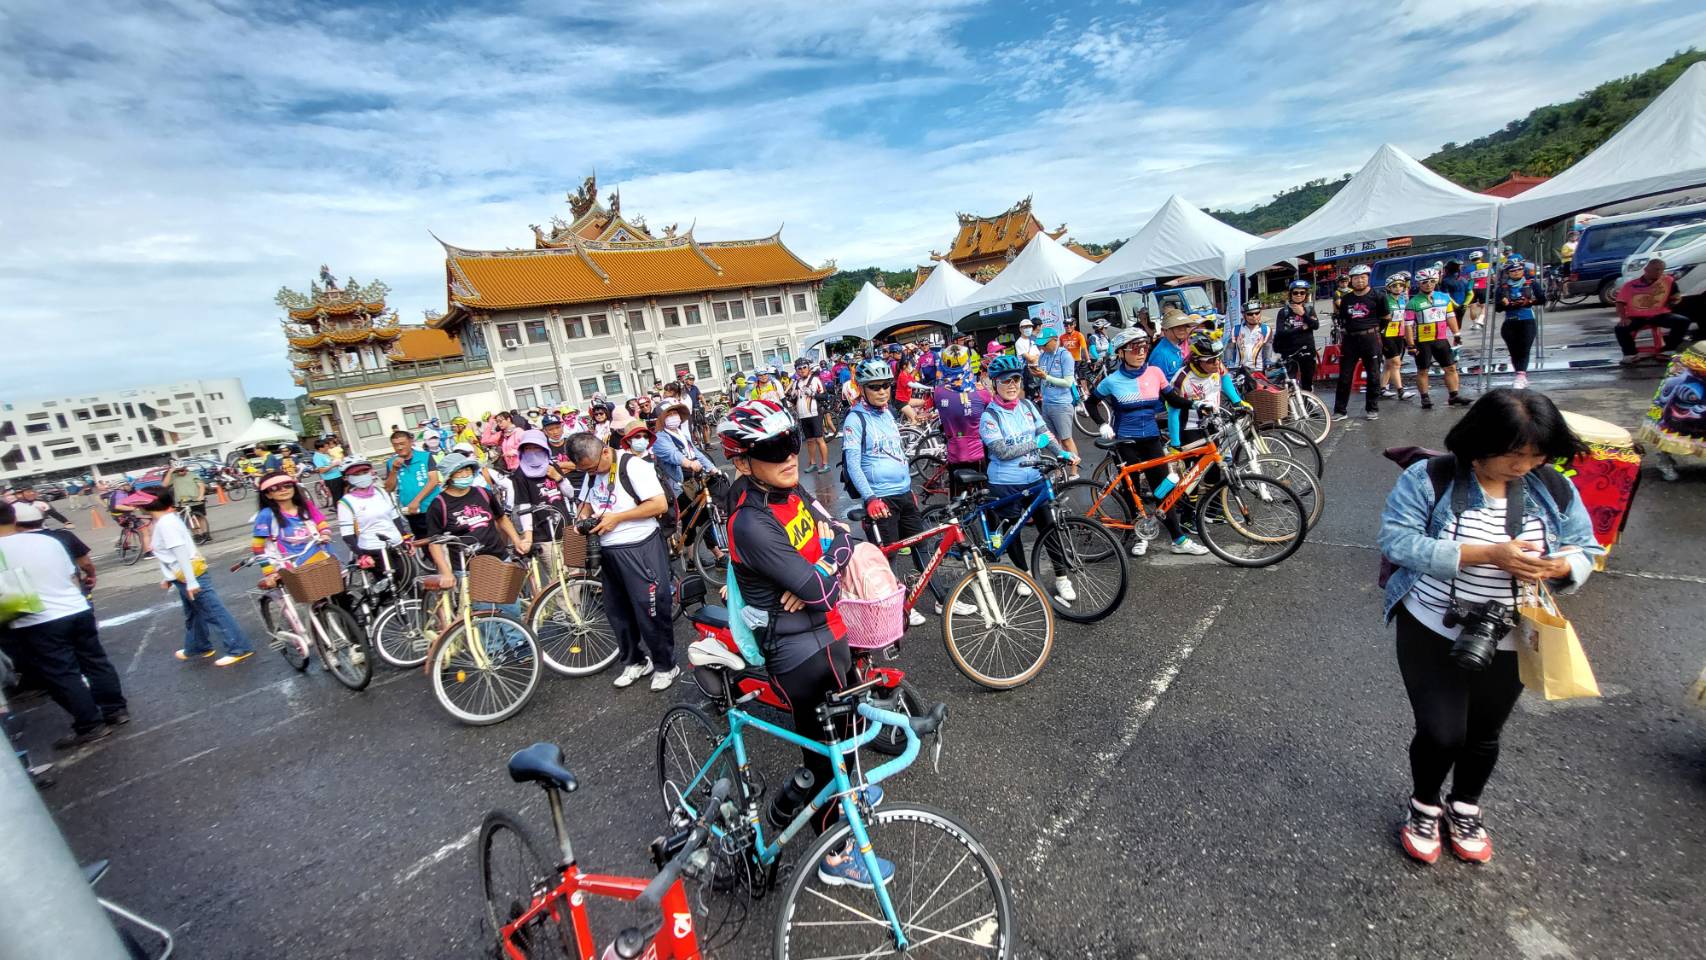 超過500自行車騎士參加集集采風漫騎活動。(圖/張欽攝)